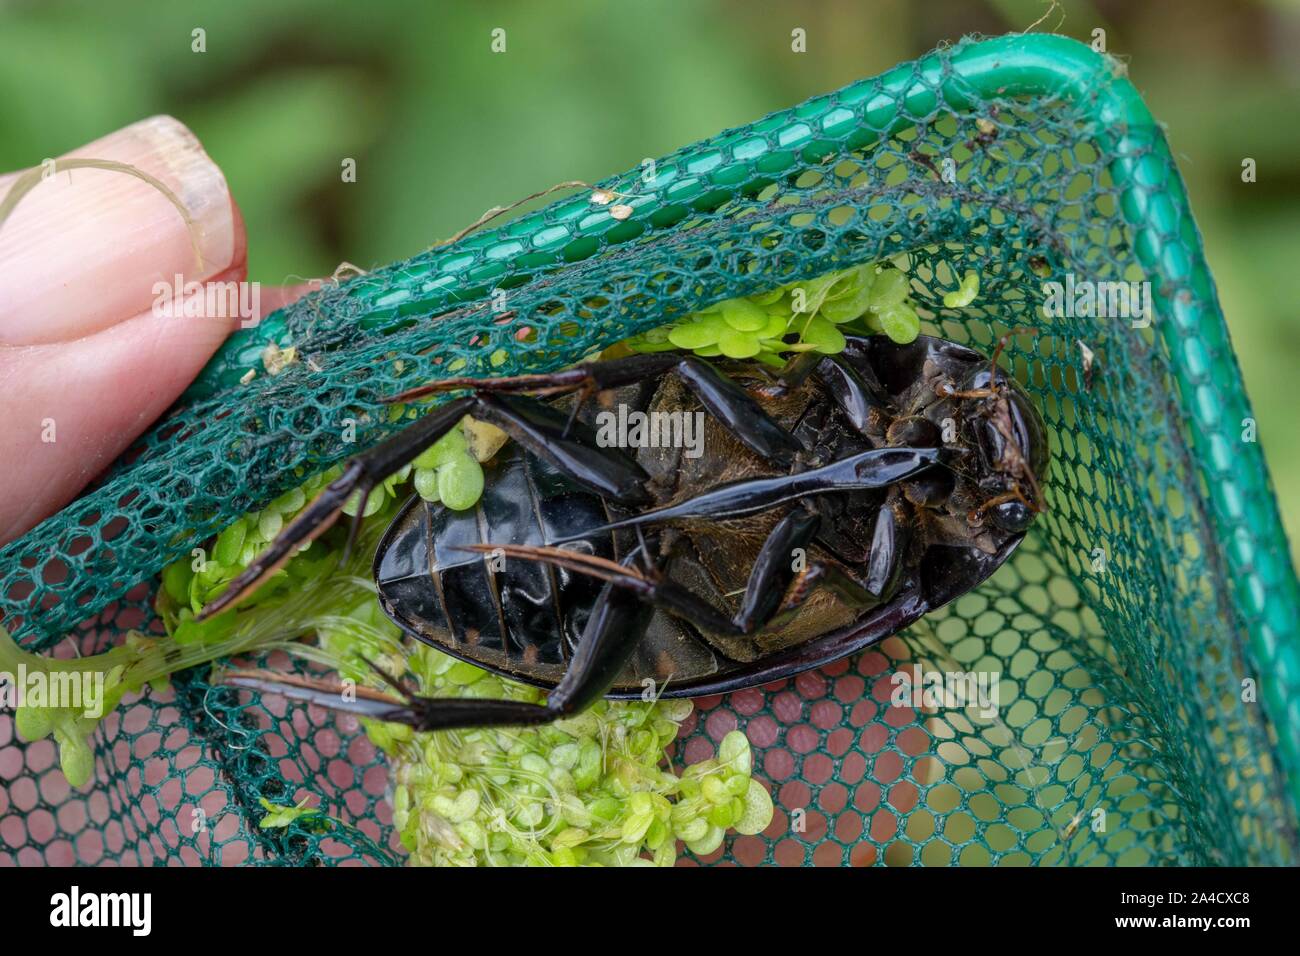 Agua de plata Escarabajo (Hydrophilus piceus). Ventral o inferior, ver. Inmersión en un estanque net. Mostrando las secciones del cuerpo, cabeza, tórax, abdomen, piernas. Foto de stock